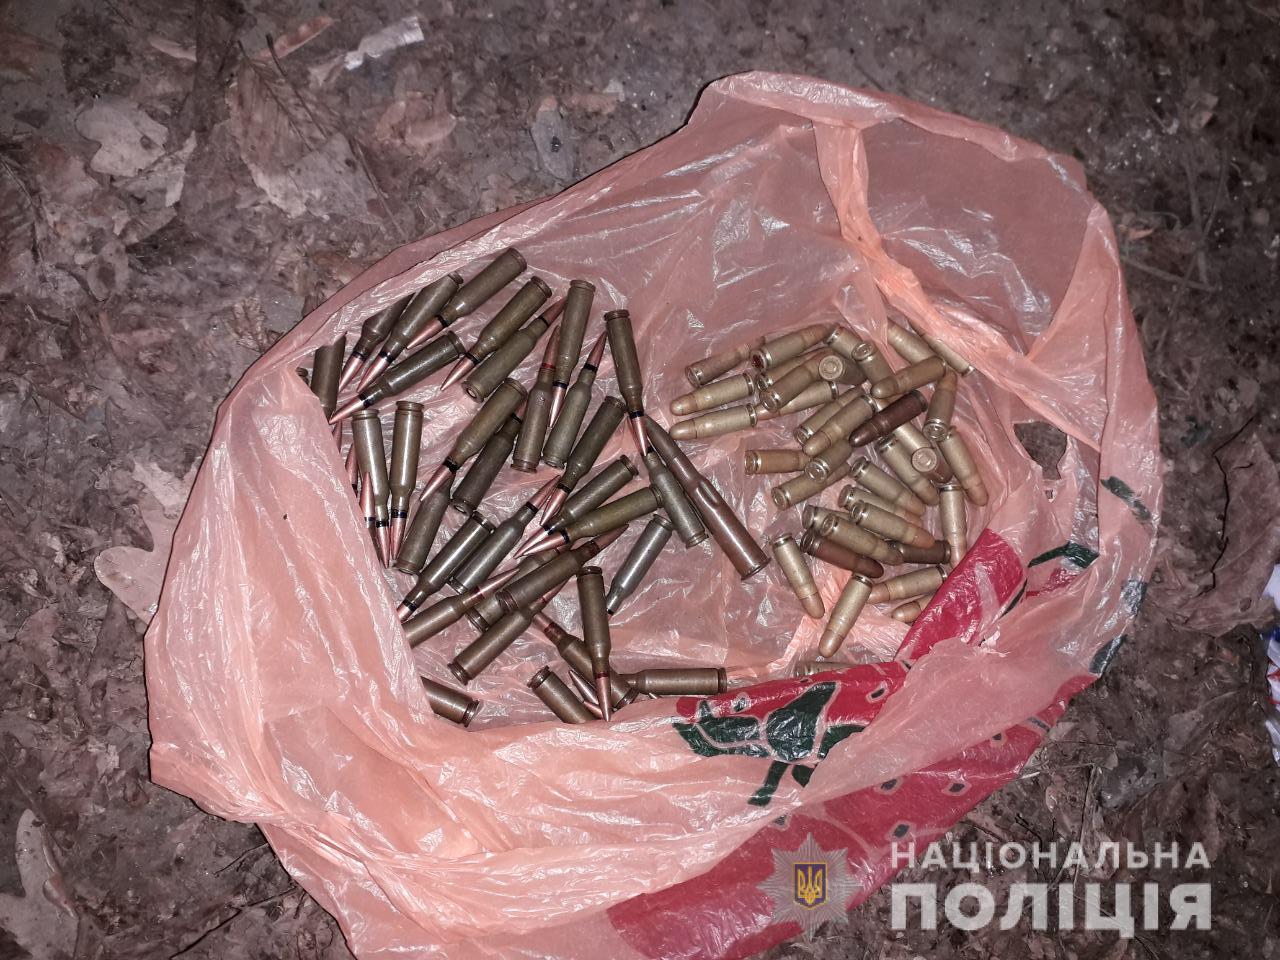 Працівники кримінальної поліції Ужгородського та Мукачівського відділів затримали двох чоловіків, які намагались реалізувати набої до автоматичної зброї.